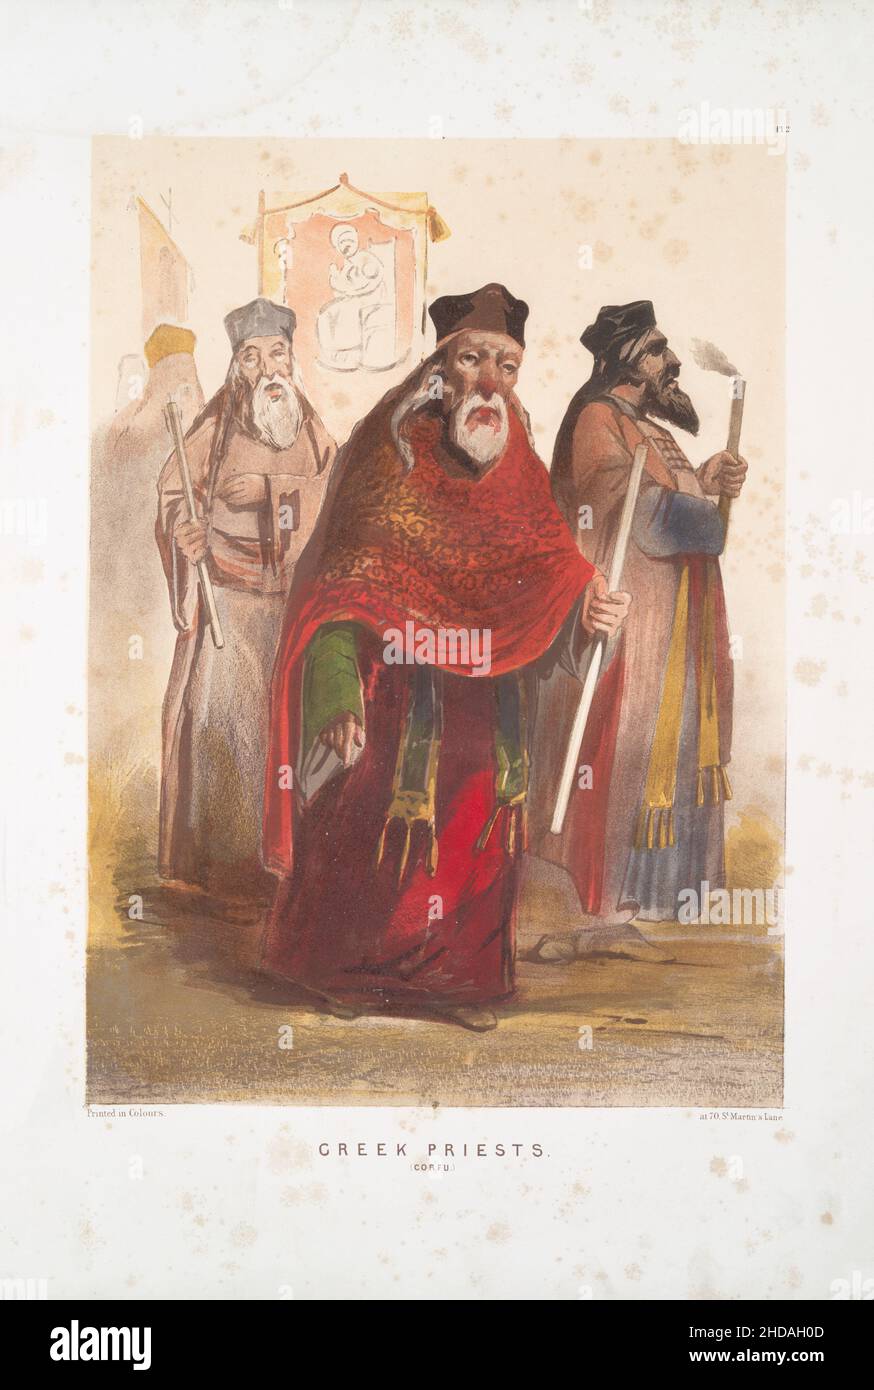 Vintage-Farblithographie des Osmanischen Reiches: Griechische Priester, Korfu 1854, von Forbes Mac Bean (Künstler) und Justin Sutcliffe (Lithograph) Stockfoto